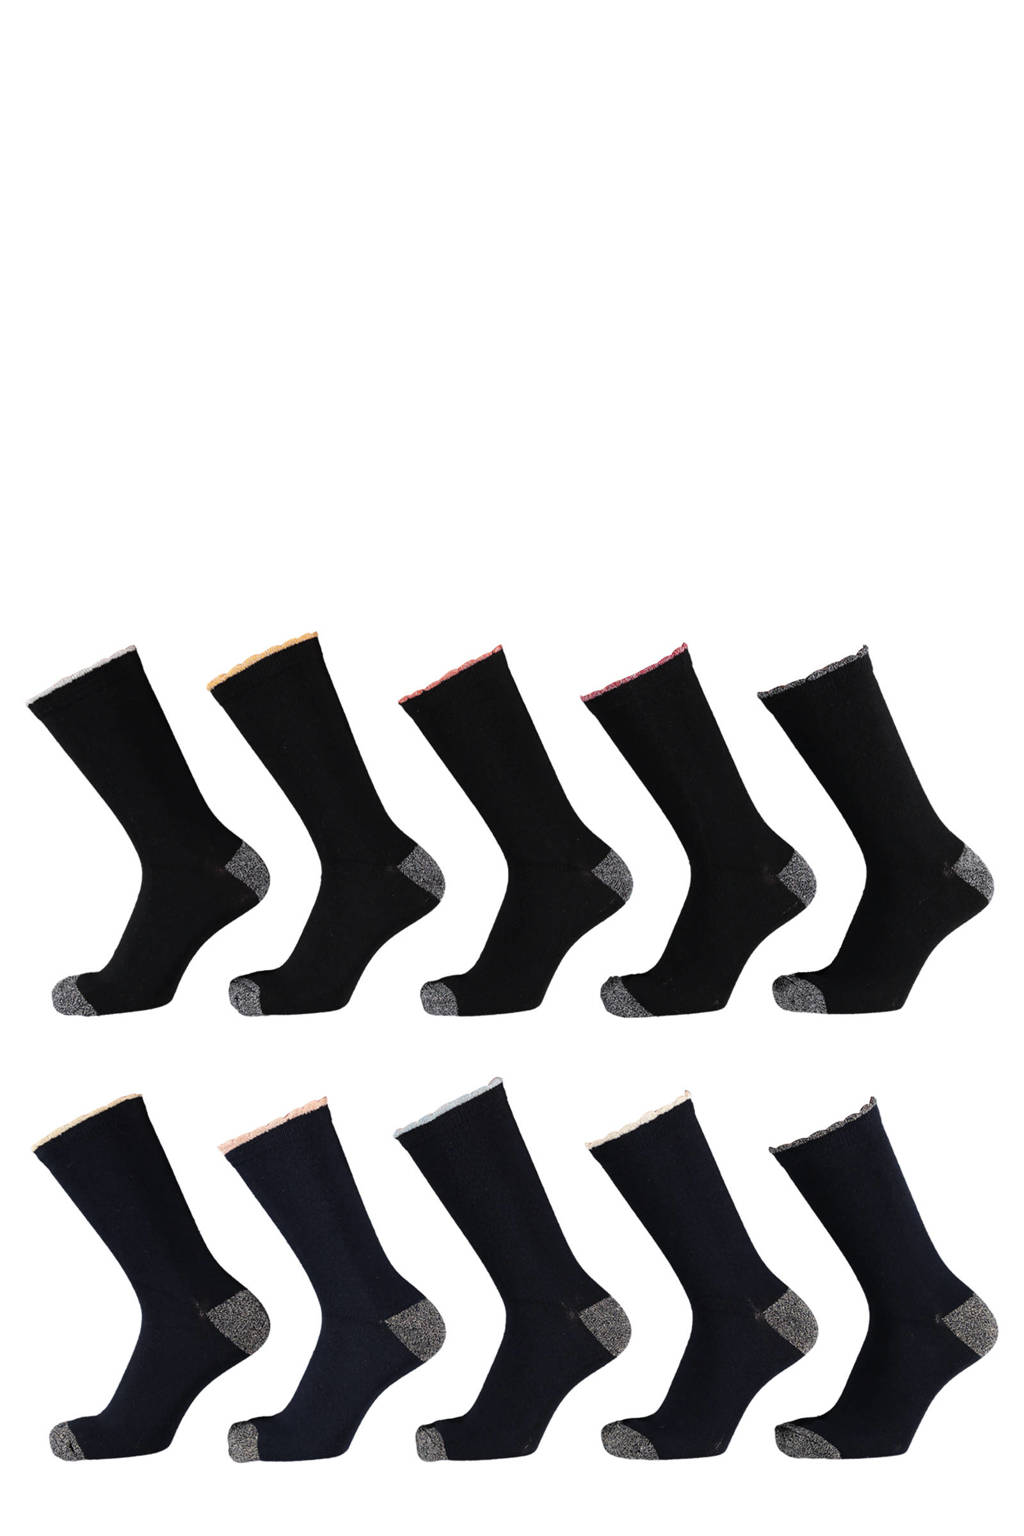 Apollo sokken - set van 10 zwart/donkerblauw, Zwart/donkerblauw